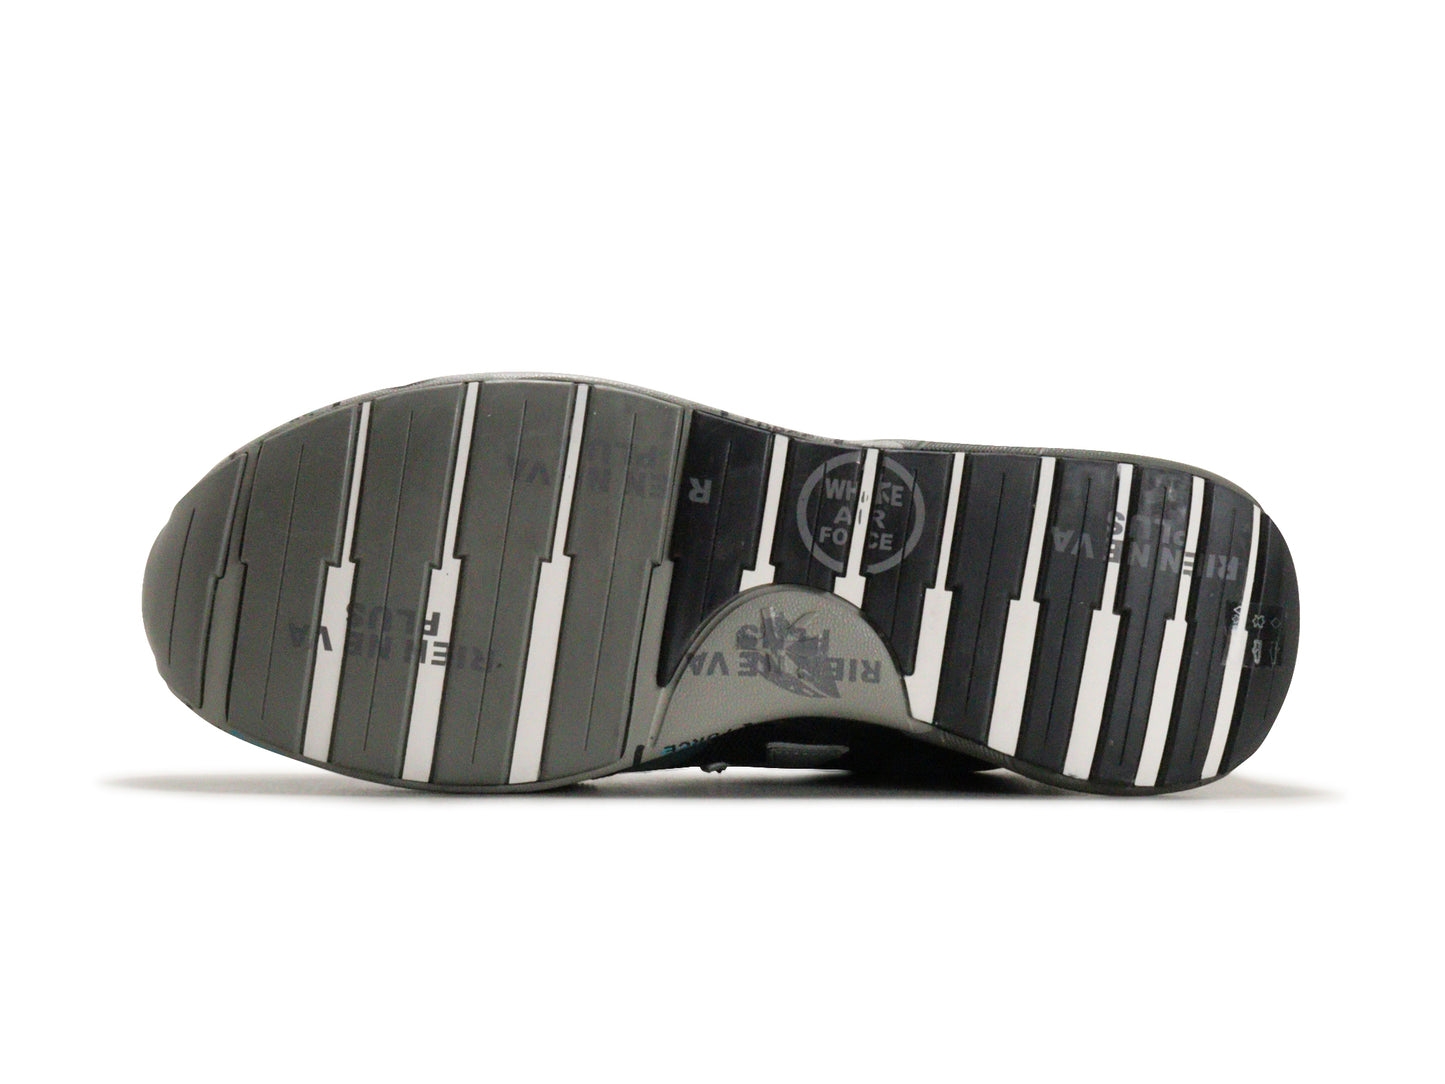 PREMIATAのスニーカー「4068」の靴底の商品画像